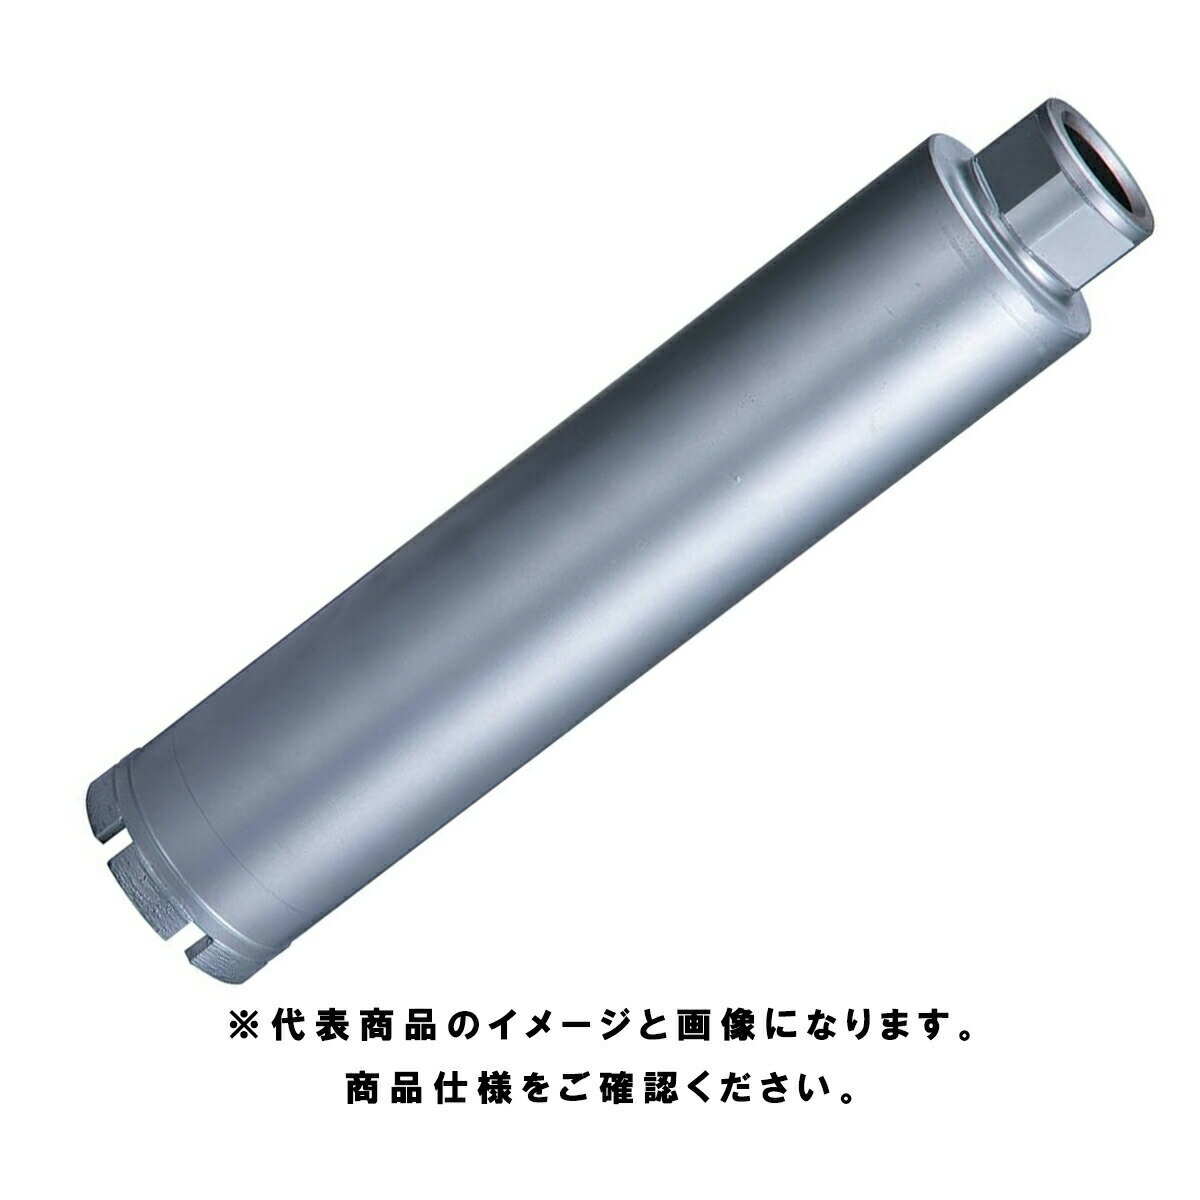 マキタ(makita) 湿式ダイヤモンドコアビット(薄刃一体型) 90mm A-11726 深さ250mm